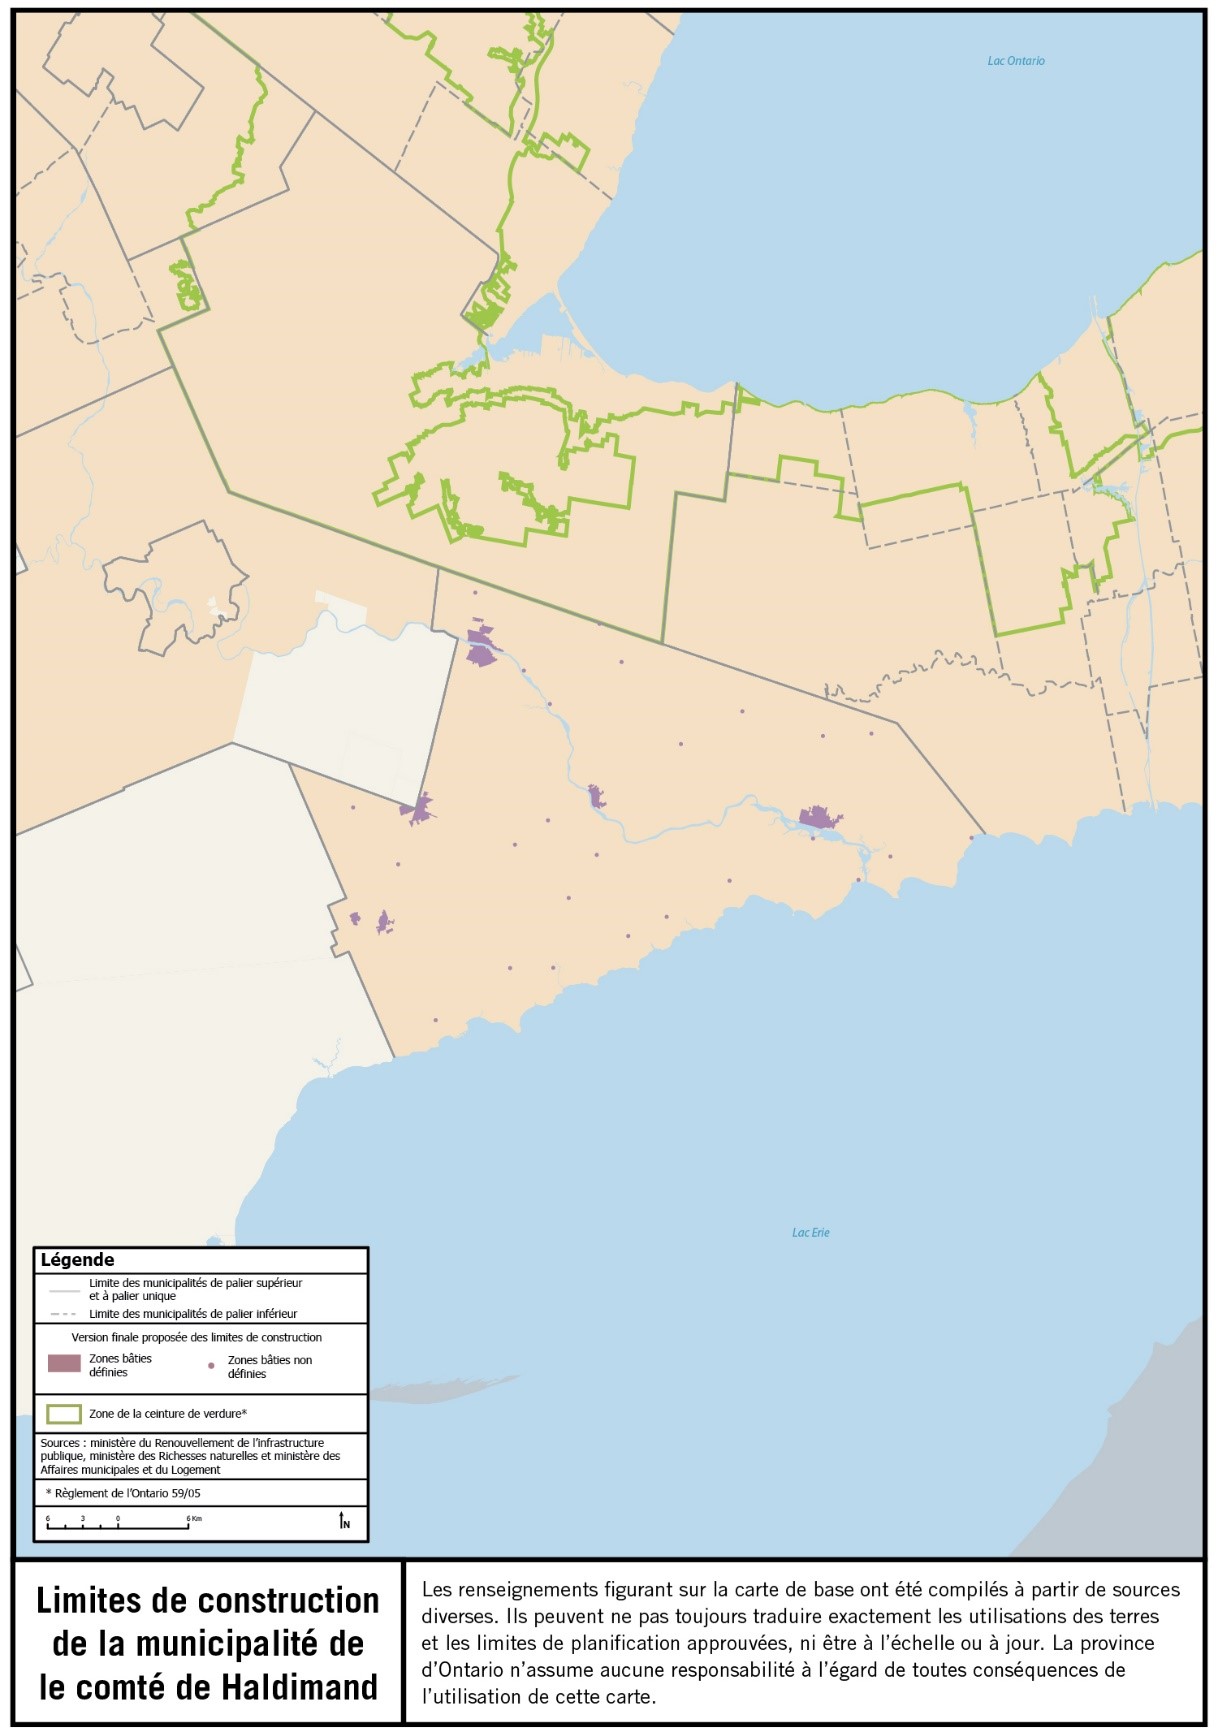 Limites de construction de la municipalité de le comté de Haldimand